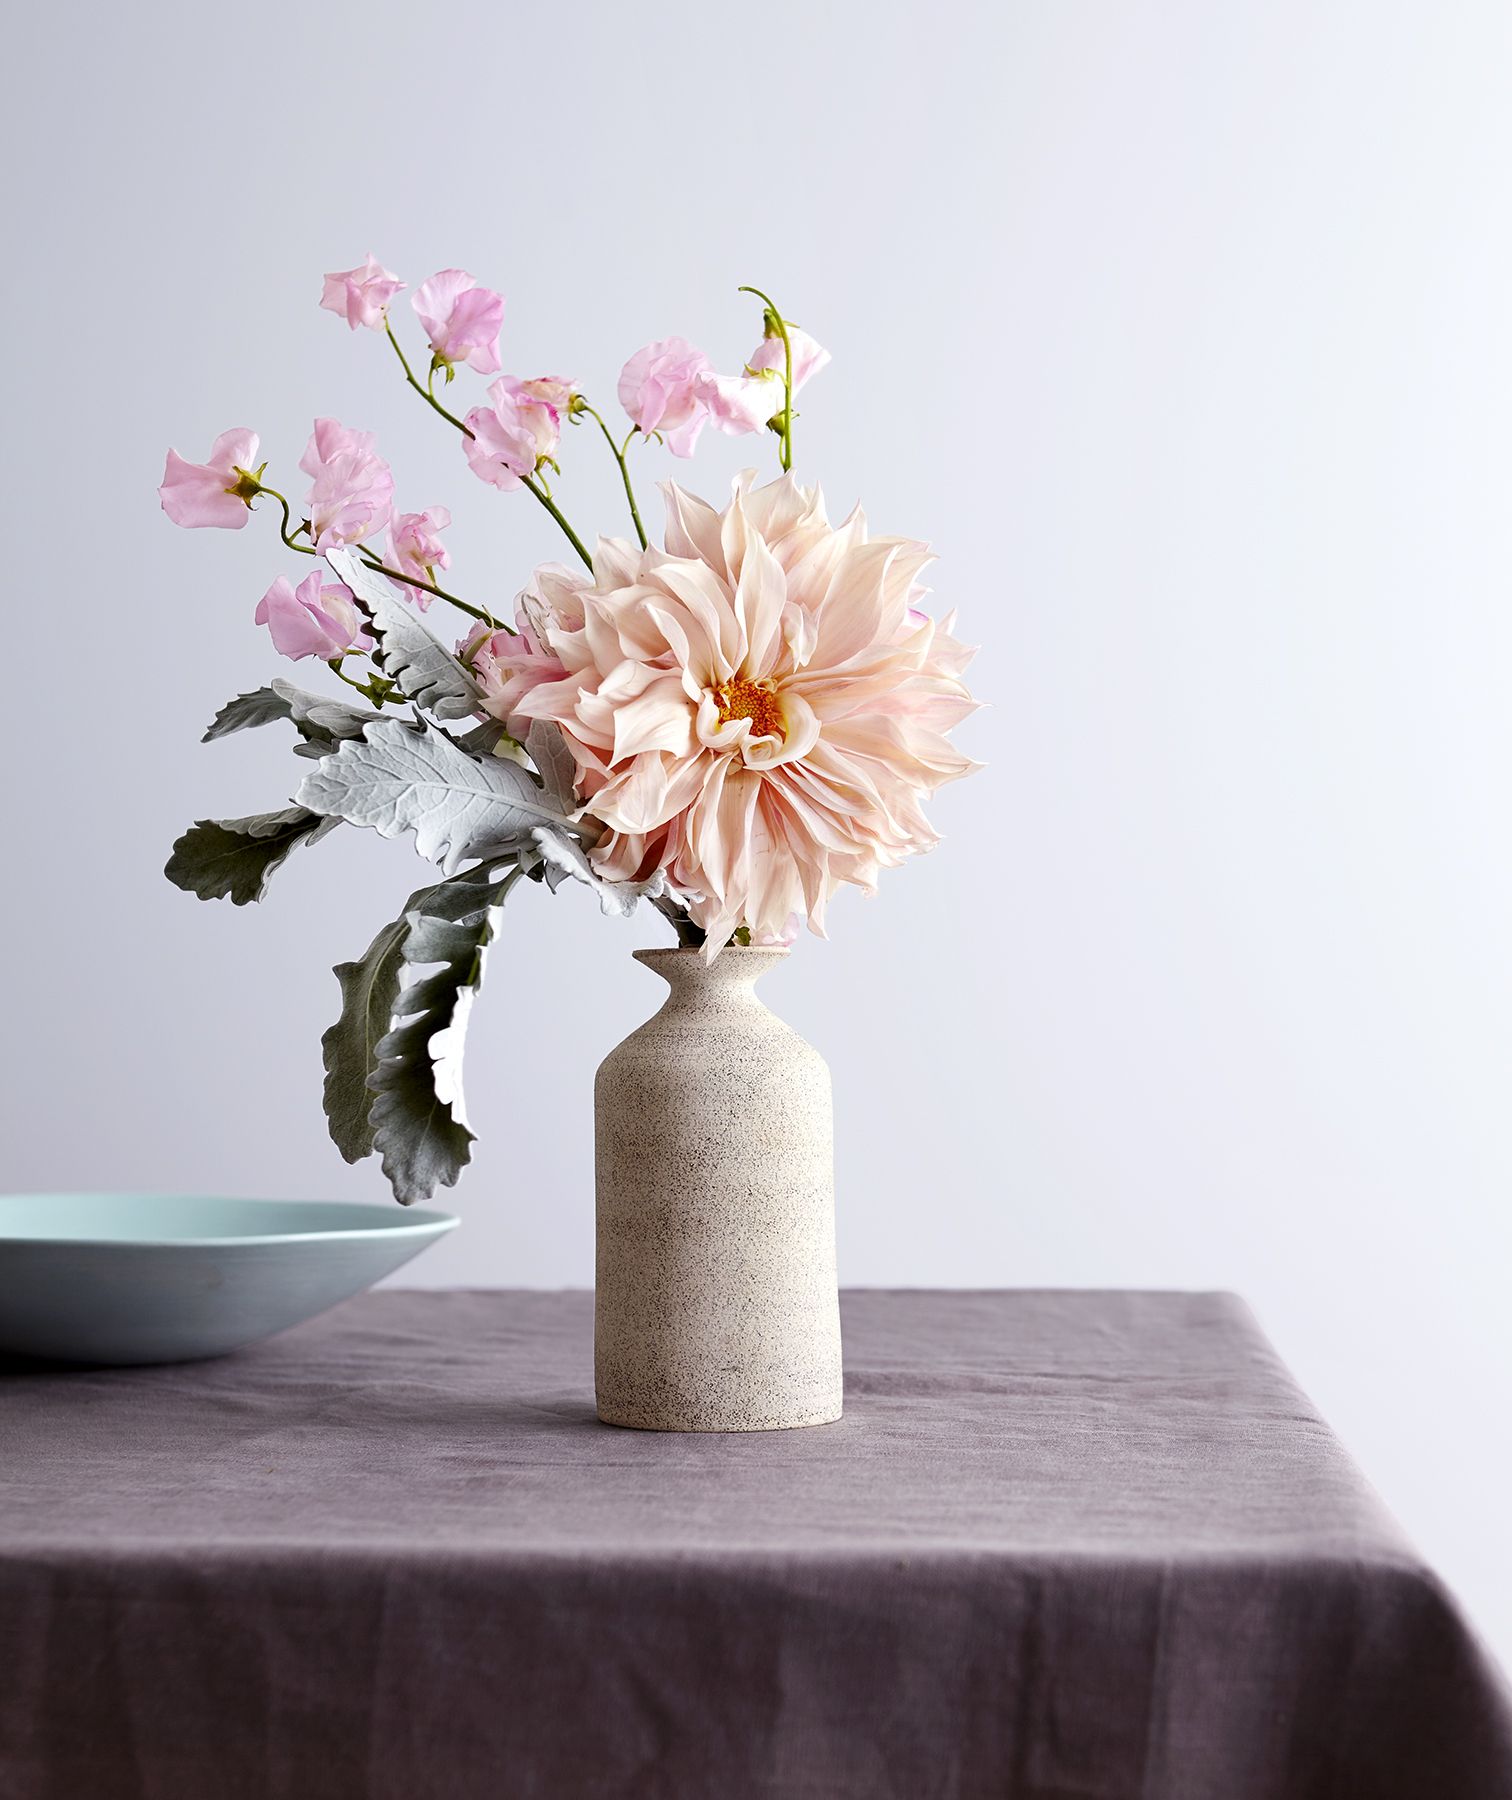 Vaza s cvijećem, plava zdjela na stolu